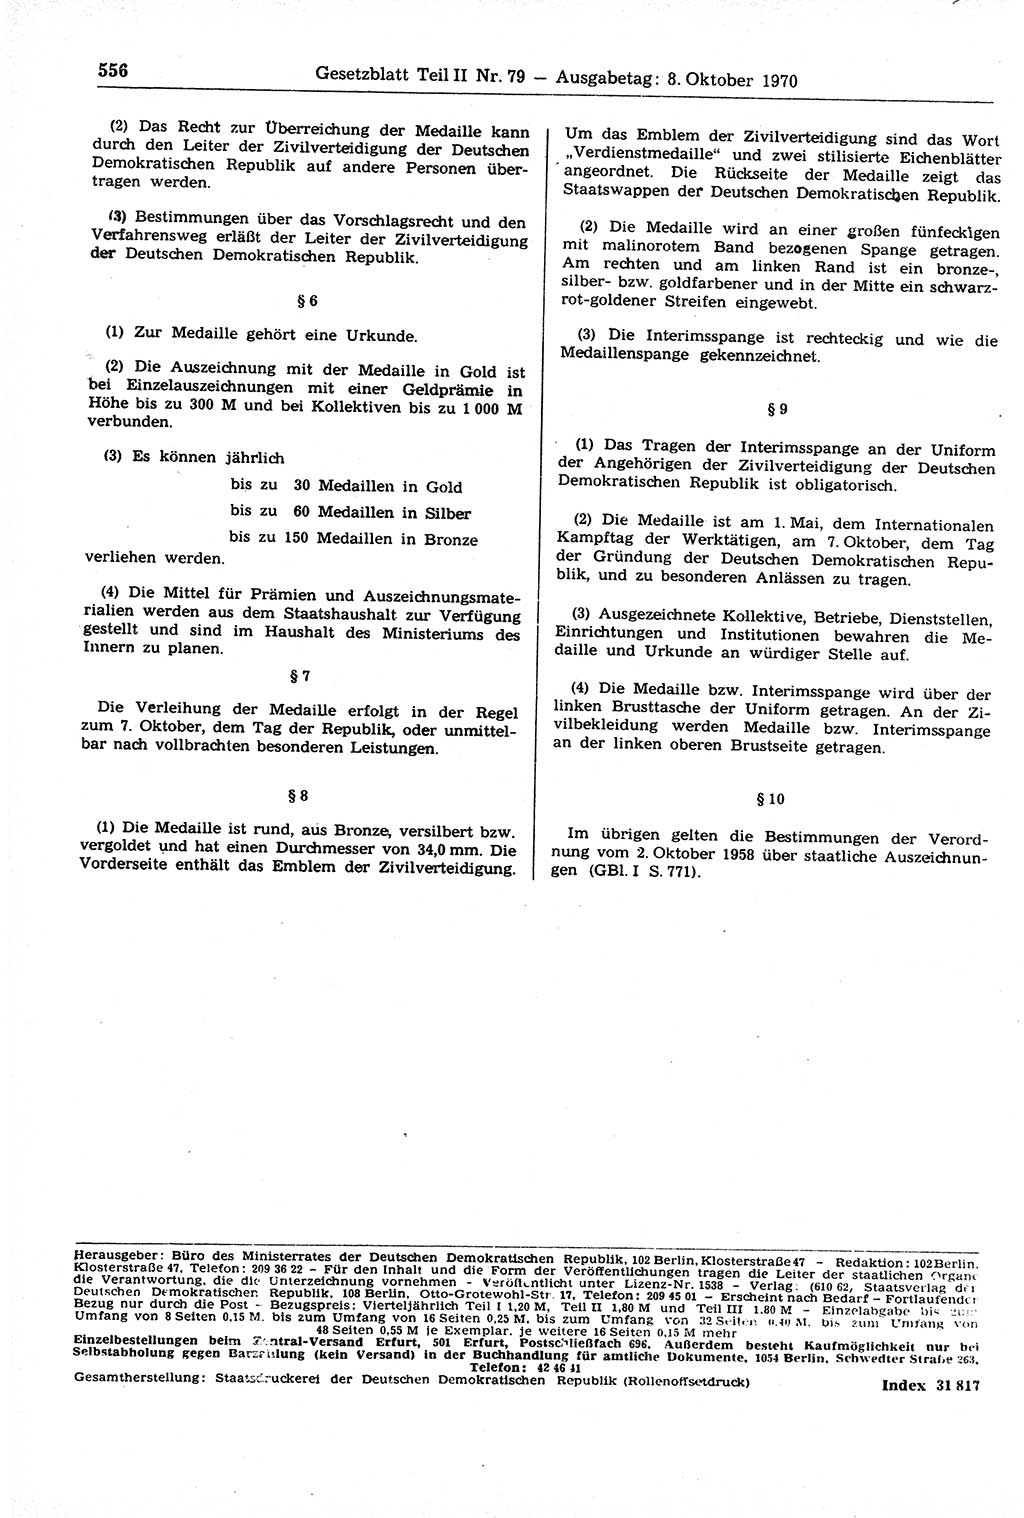 Gesetzblatt (GBl.) der Deutschen Demokratischen Republik (DDR) Teil ⅠⅠ 1970, Seite 556 (GBl. DDR ⅠⅠ 1970, S. 556)